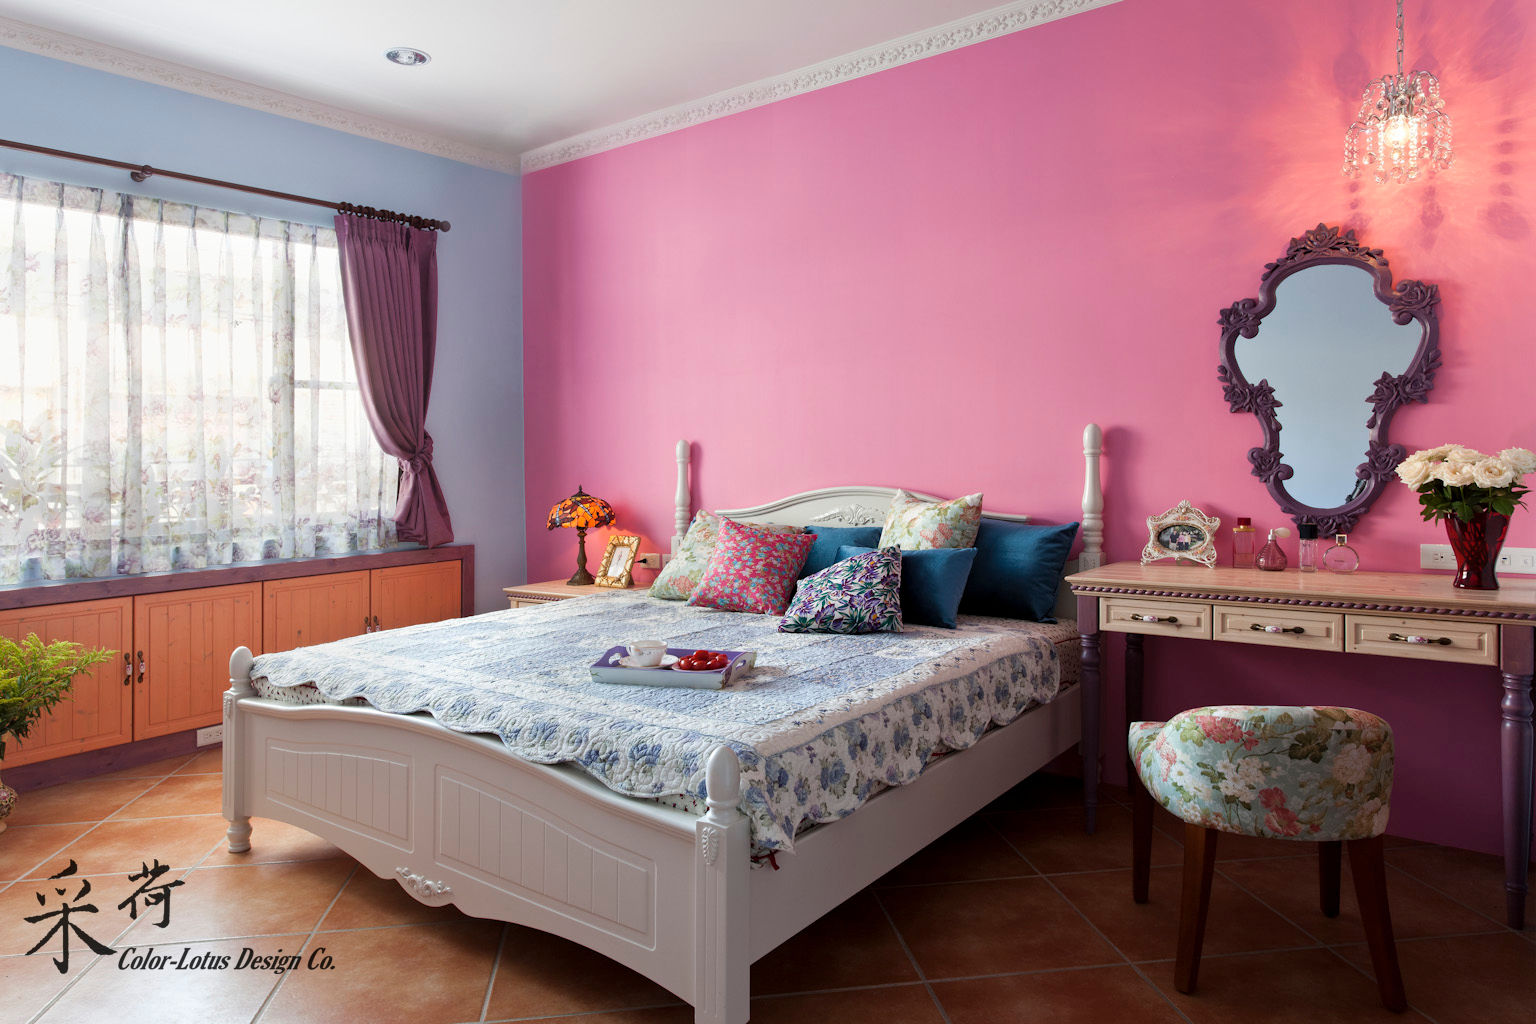 西班牙鄉村風格-透天別墅, Color-Lotus Design Color-Lotus Design غرفة نوم خشب نقي Multicolored منضدة جانبية